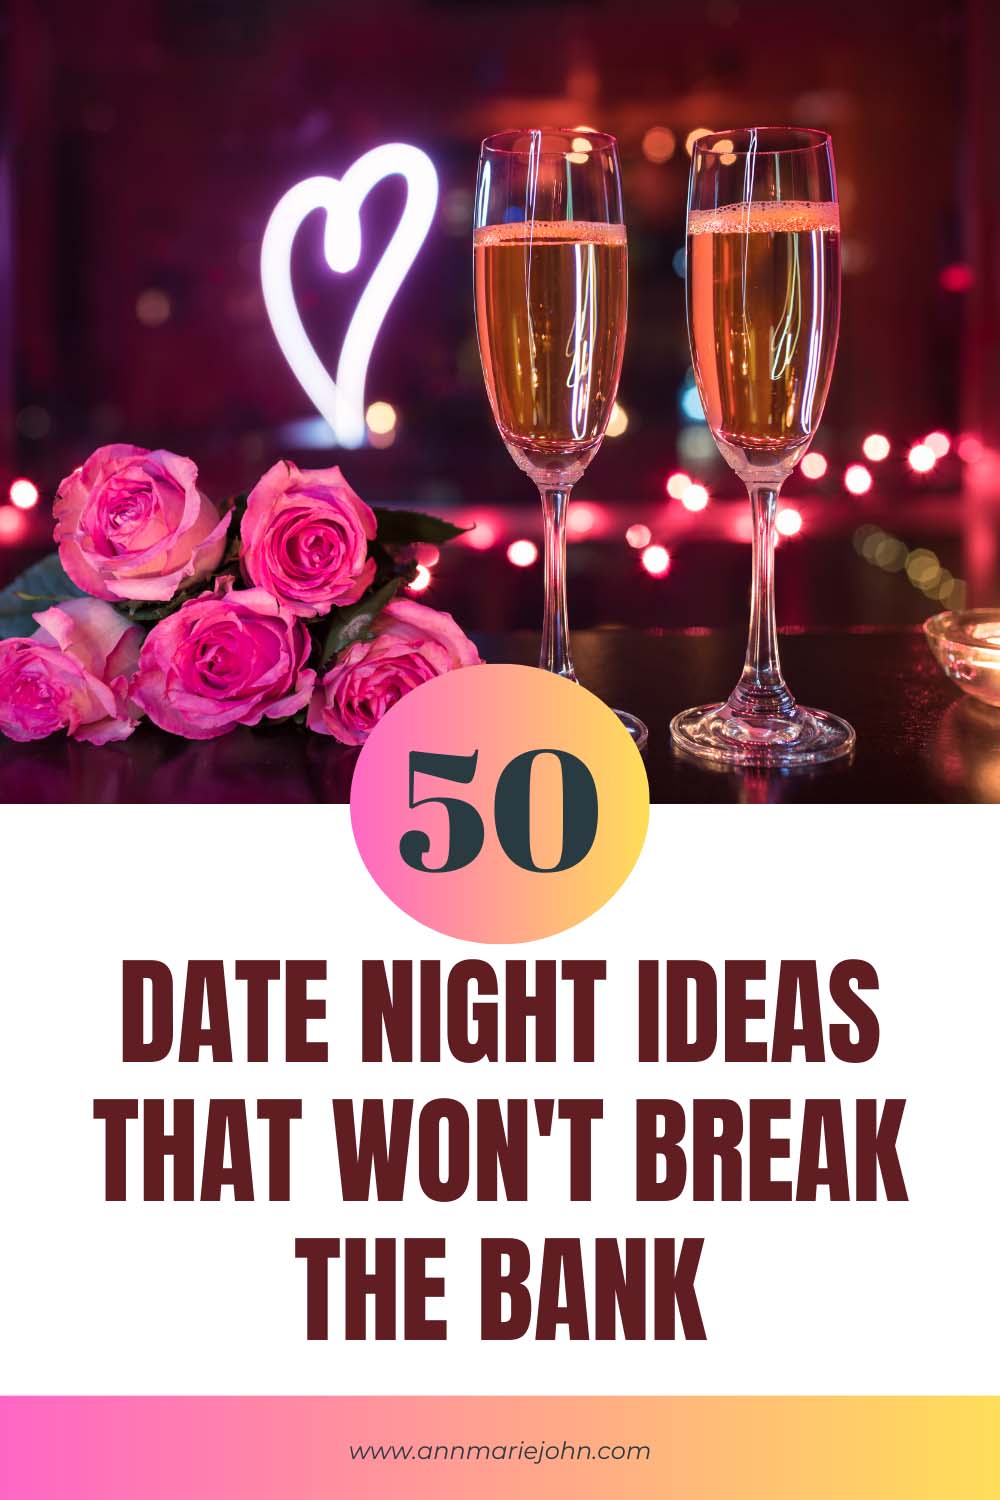 50 Date Night Ideas That Won't Break the Bank